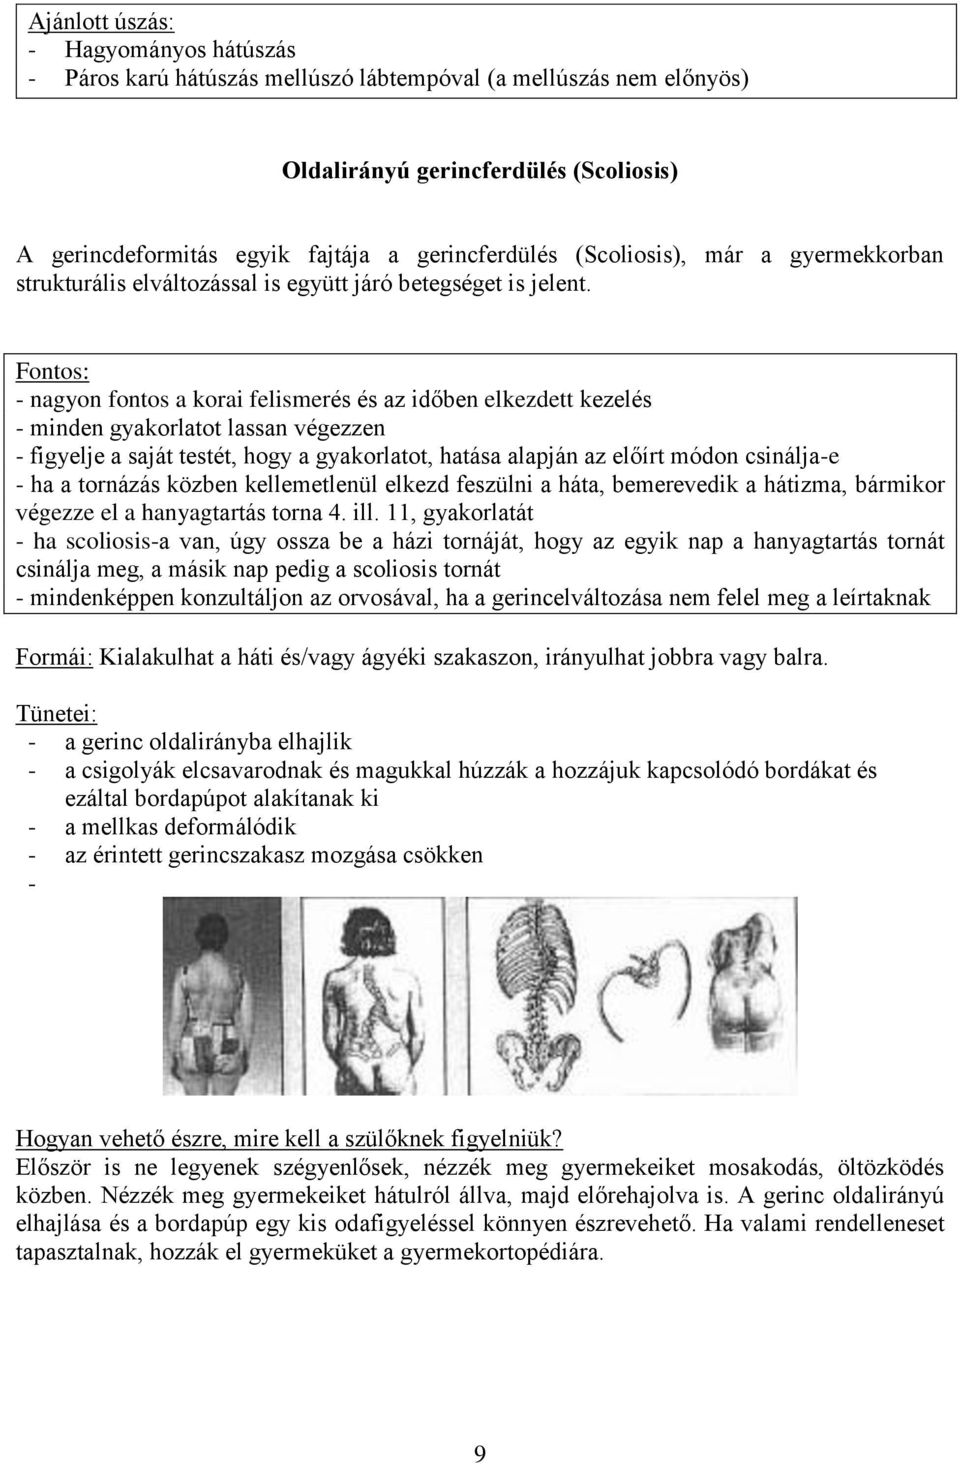 A Marfan szindróma szövődményeként kialakuló gerincferdülés esetén, illetve  annak megelőzése érdekében alkalmazható gerinctorna - PDF Ingyenes letöltés